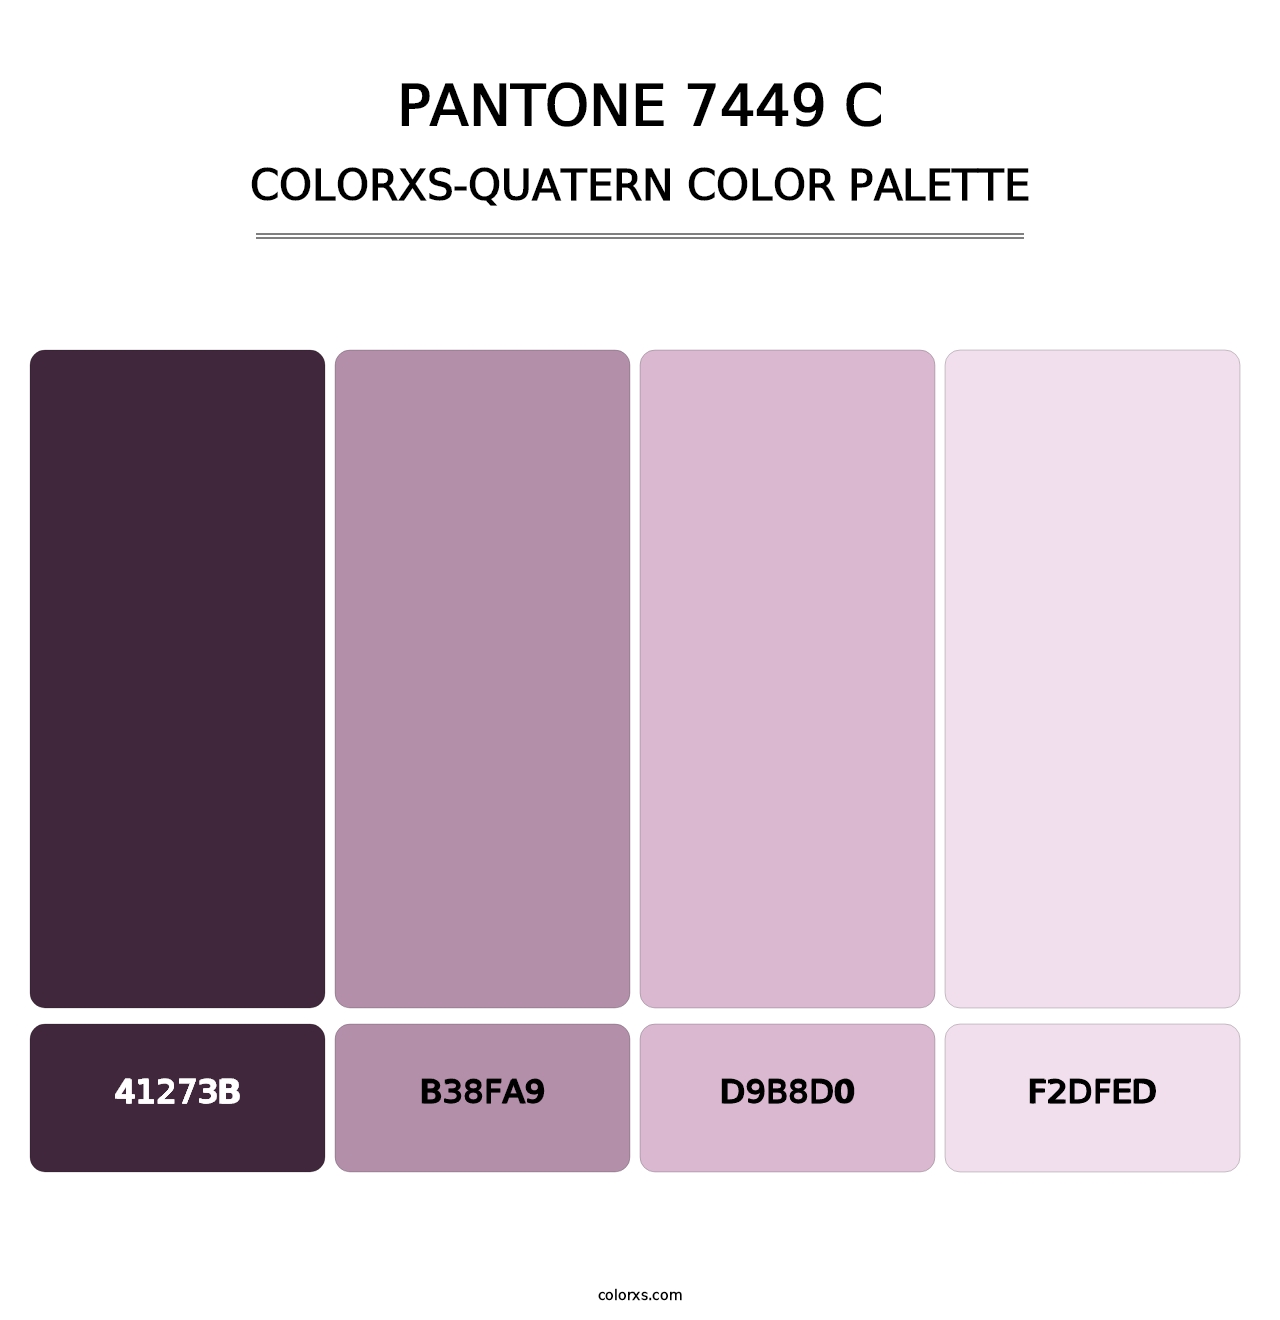 PANTONE 7449 C - Colorxs Quatern Palette